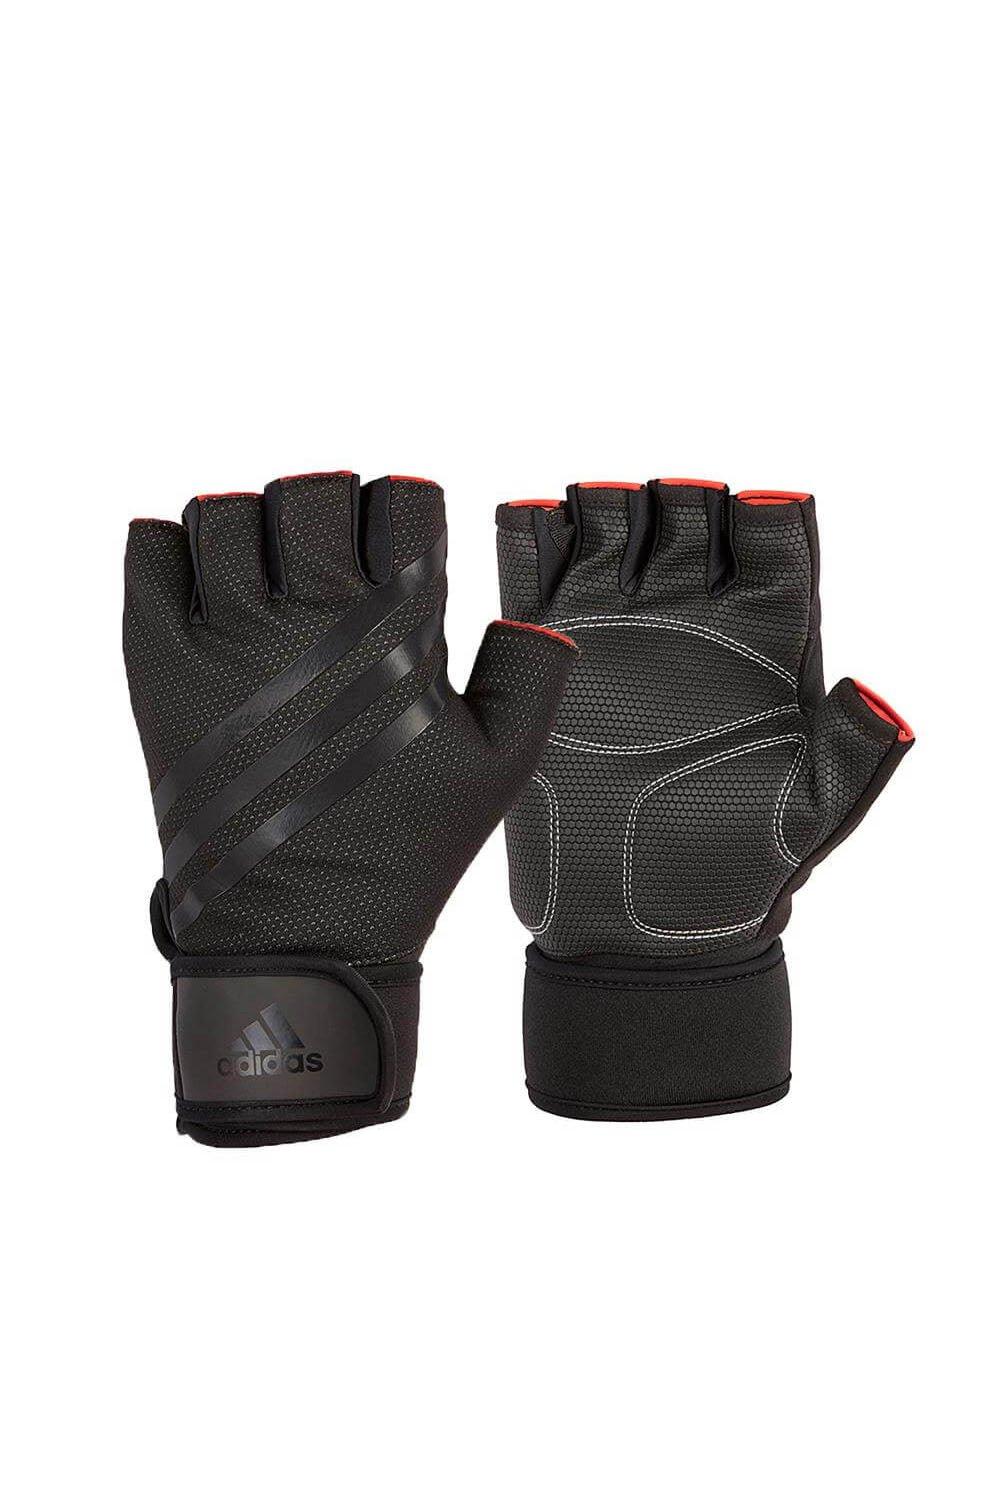 Перчатки для тяжелой атлетики с половиной пальца Adidas, черный перчатки tcare силиконовые гелевые для поддержки большого пальца запястья для коррекции артрита и давления защитные перчатки от запястног